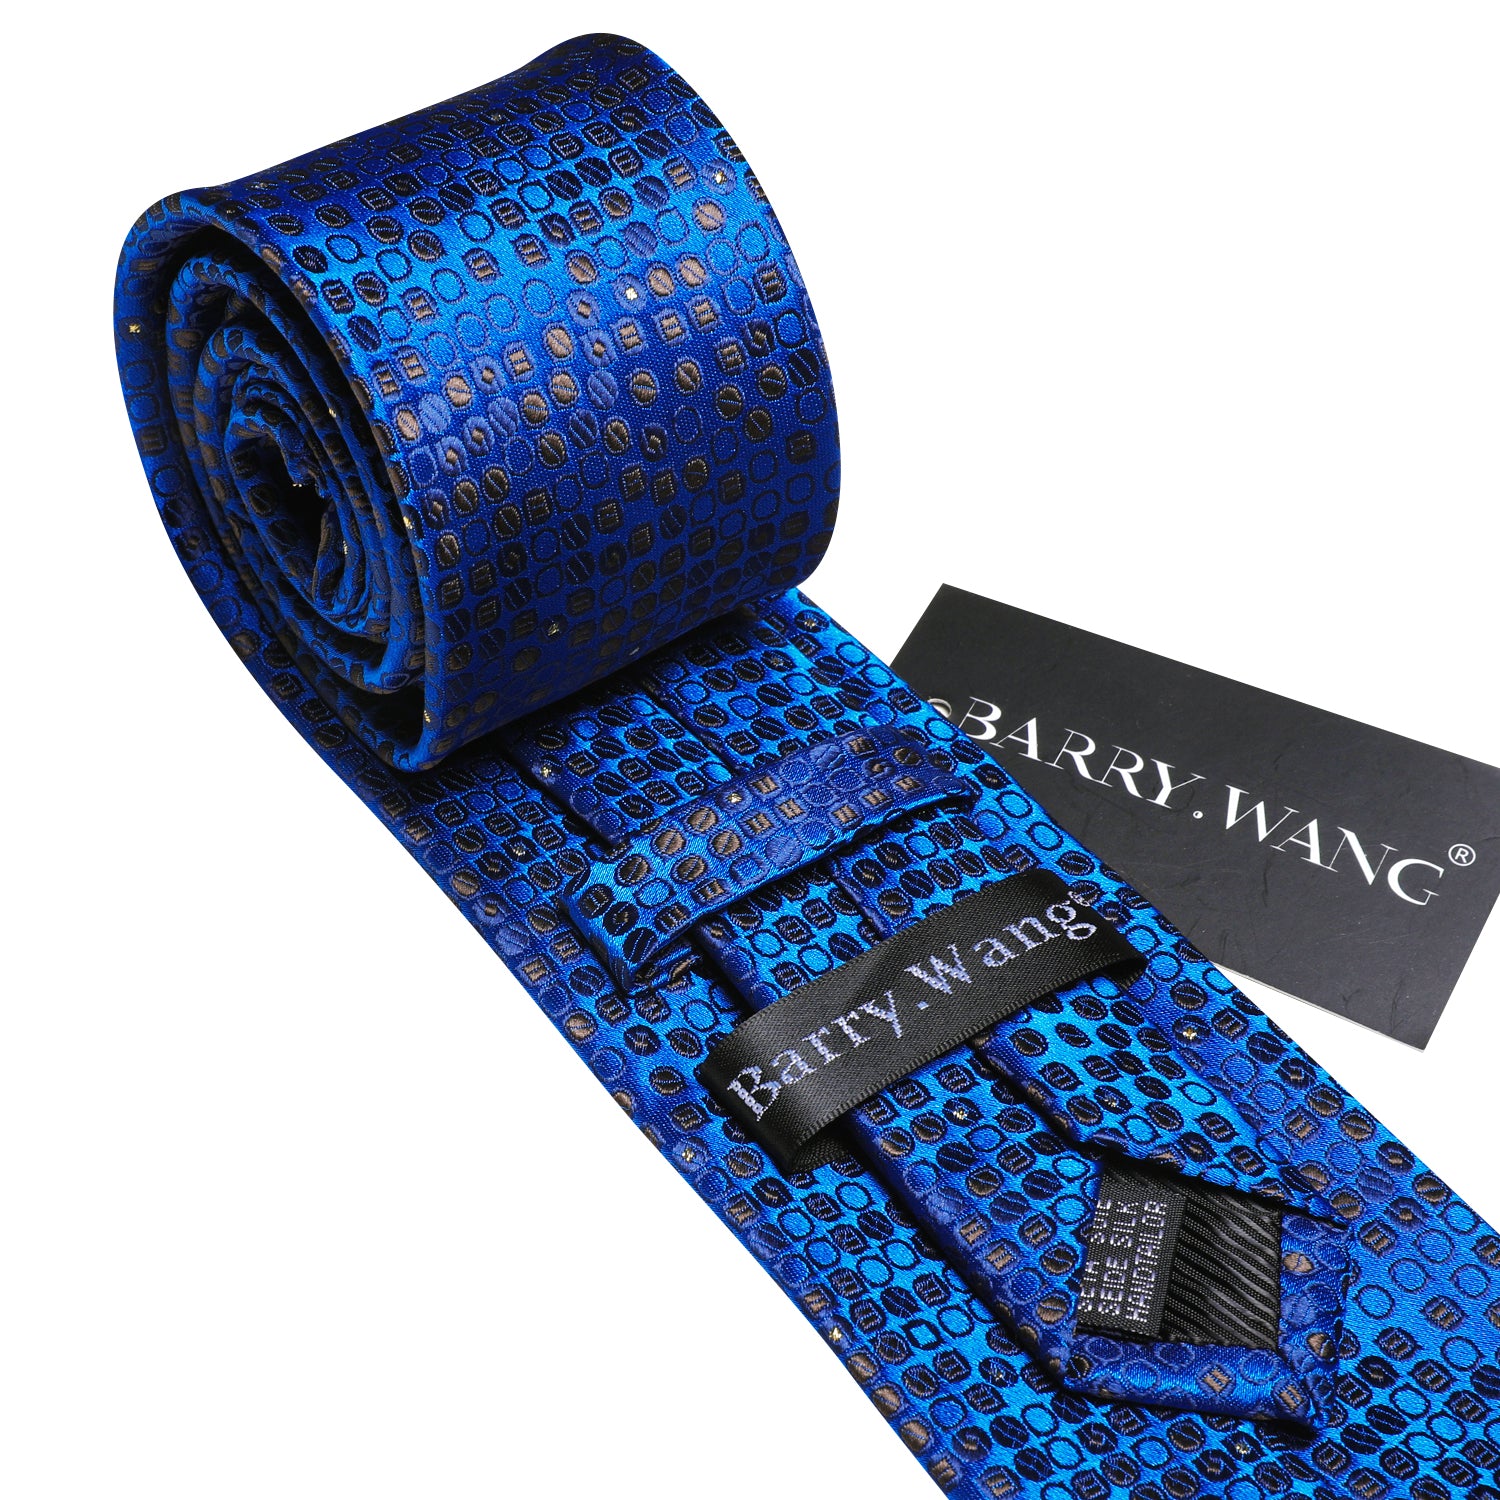 Novetly Blue Print Roud Silk Tie Hanky Cufflinks Set